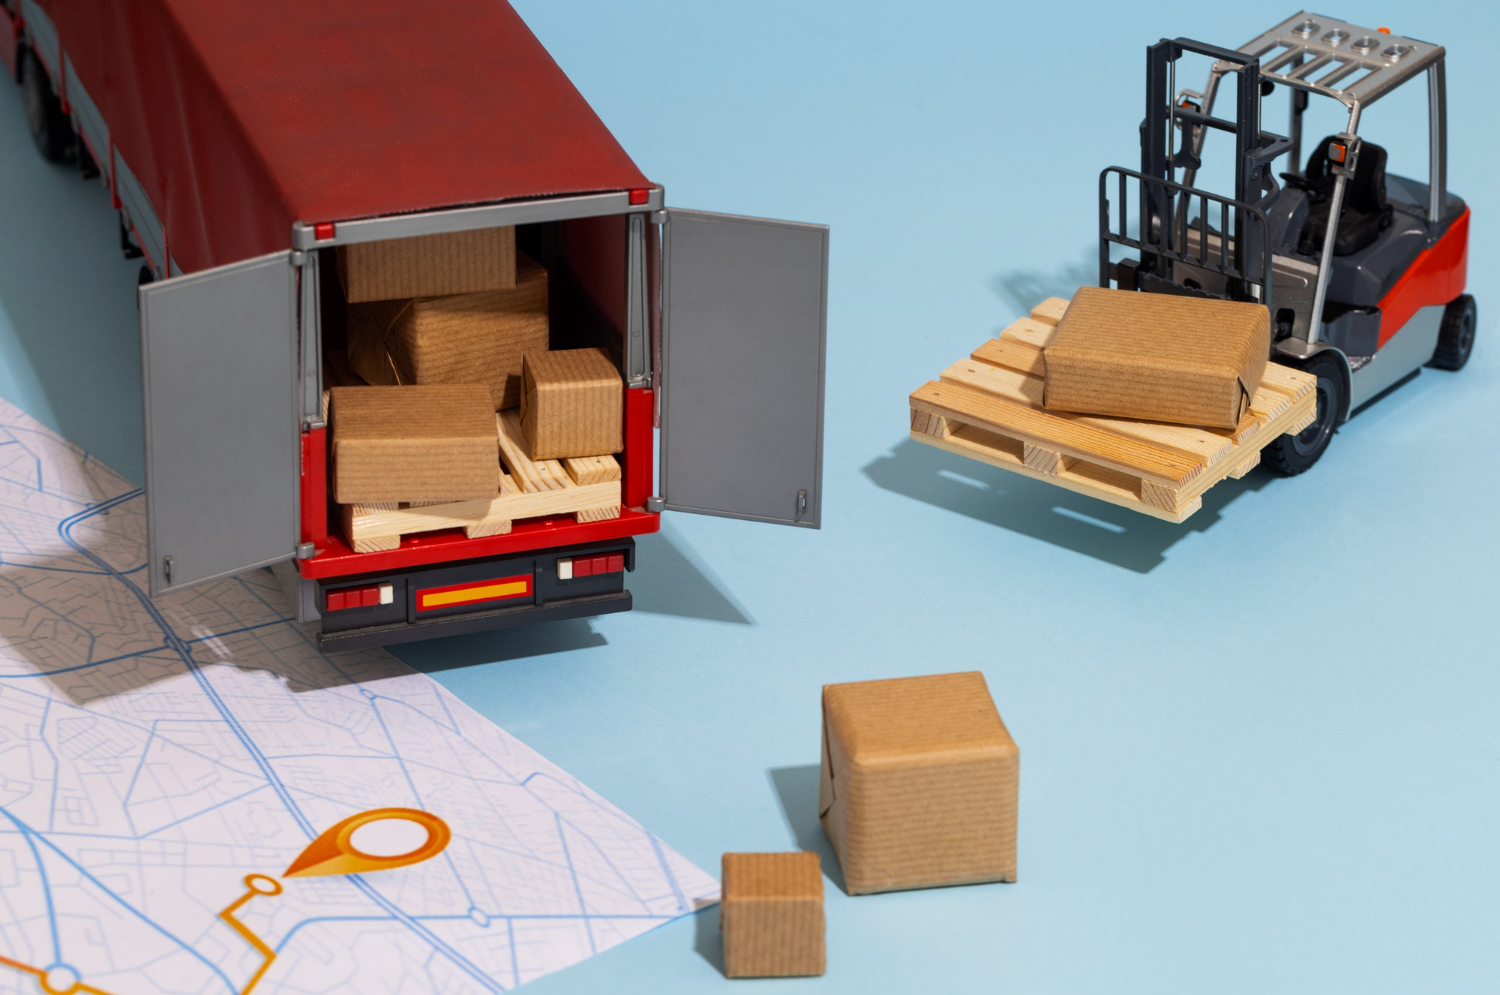 Ilustração de um caminhão com algumas caixas dentro. Do lado de fora, uma empilhadeira com um pallet, algumas caixas e um mapa.